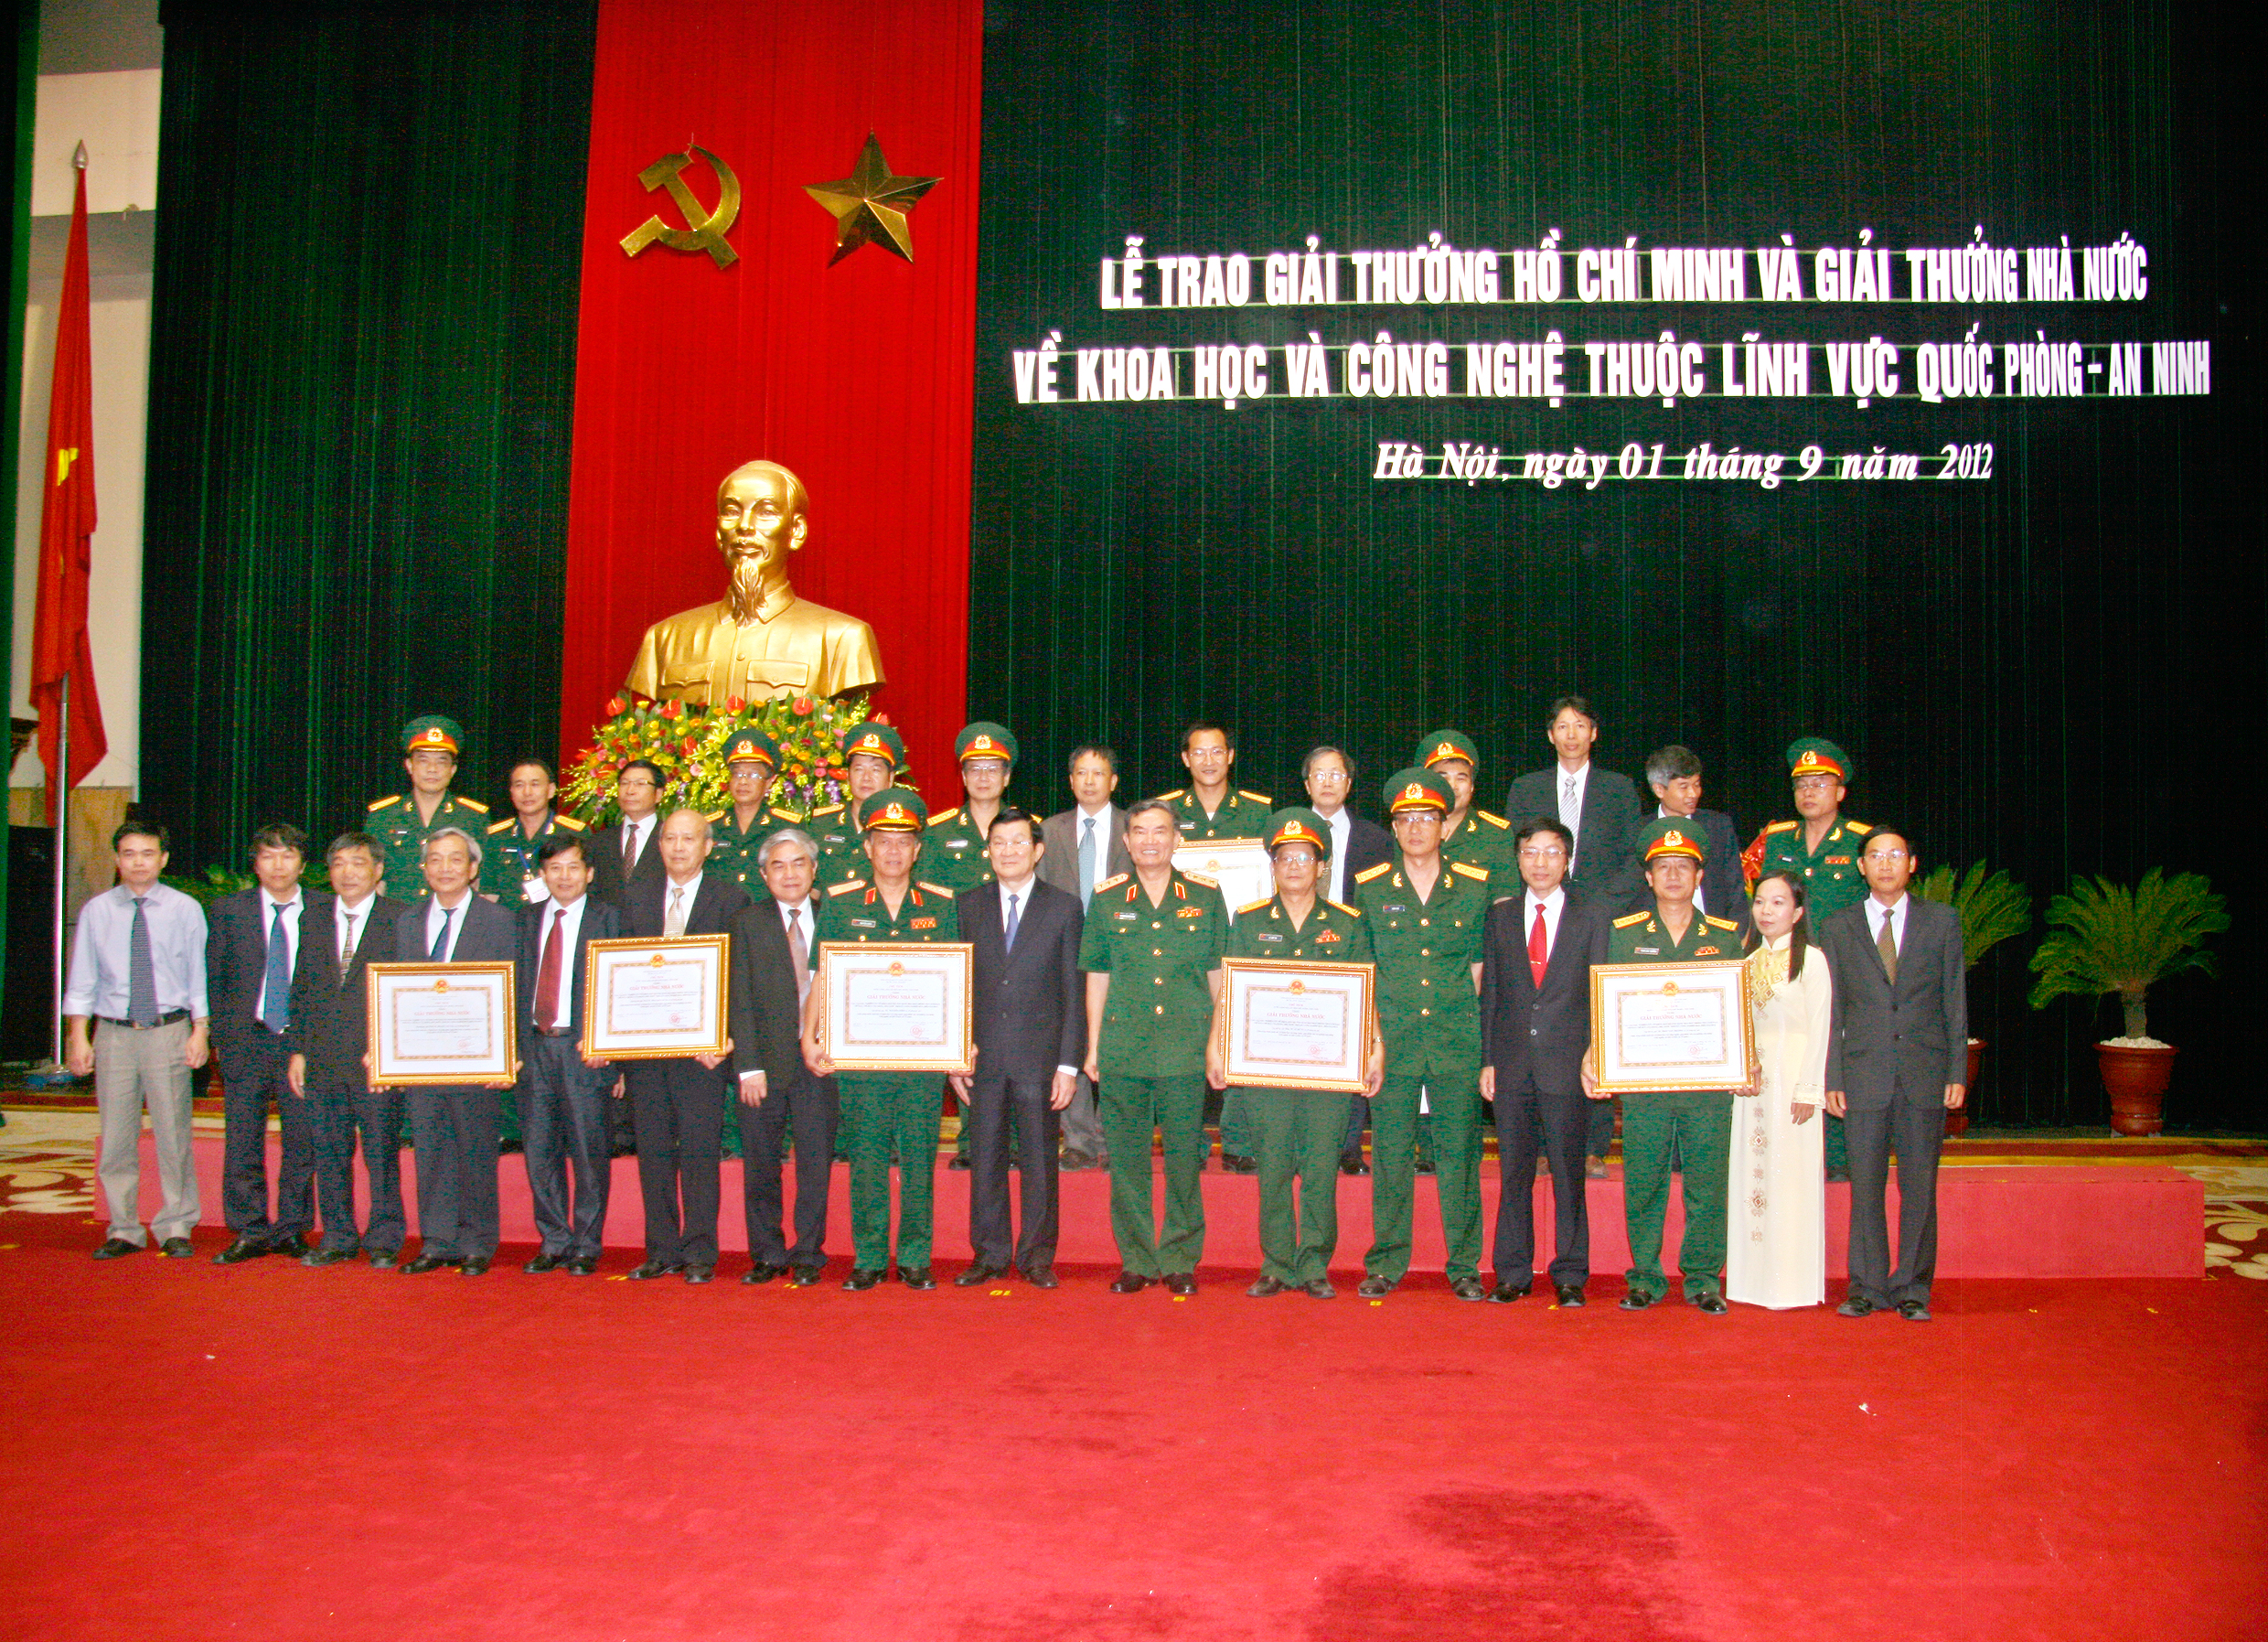 Chủ tịch nước Trương Tấn Sang chụp ảnh kỷ niệm cùng các nhà khoa học của ban Cơ yếu Chính phủ được nhận giải thưởng